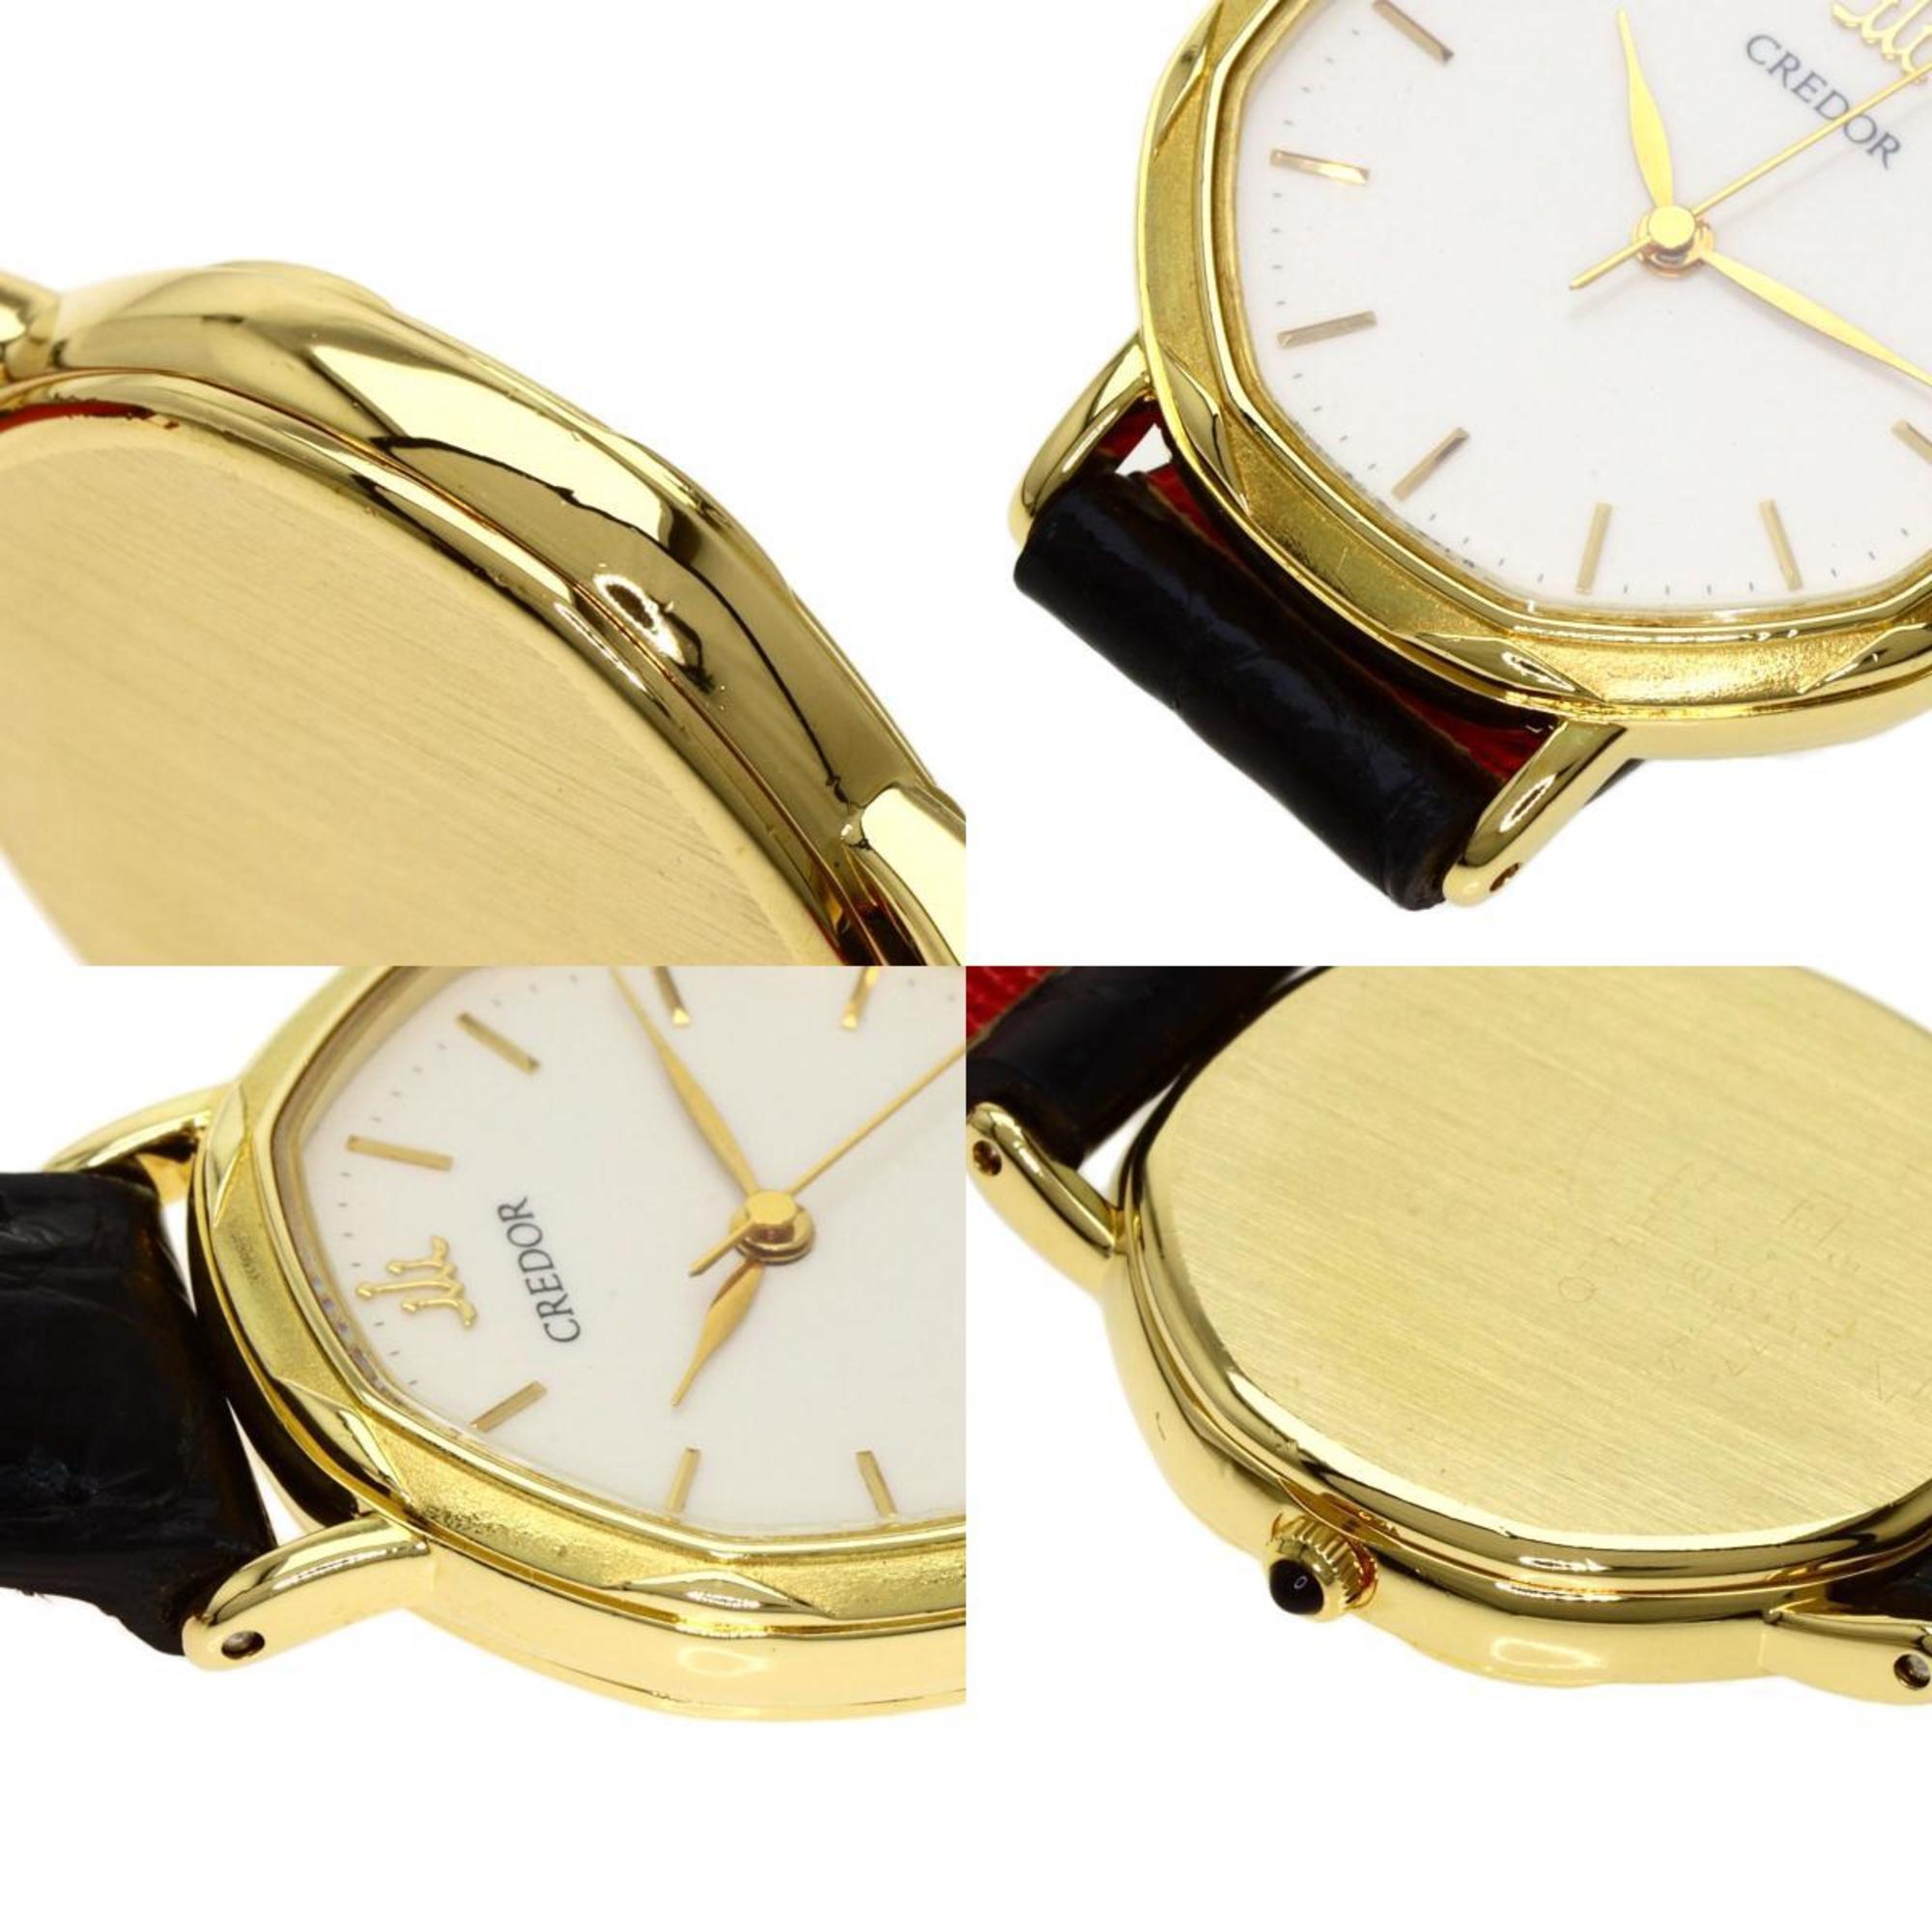 Seiko 1271-5001 Credor watch K18 yellow gold leather ladies SEIKO